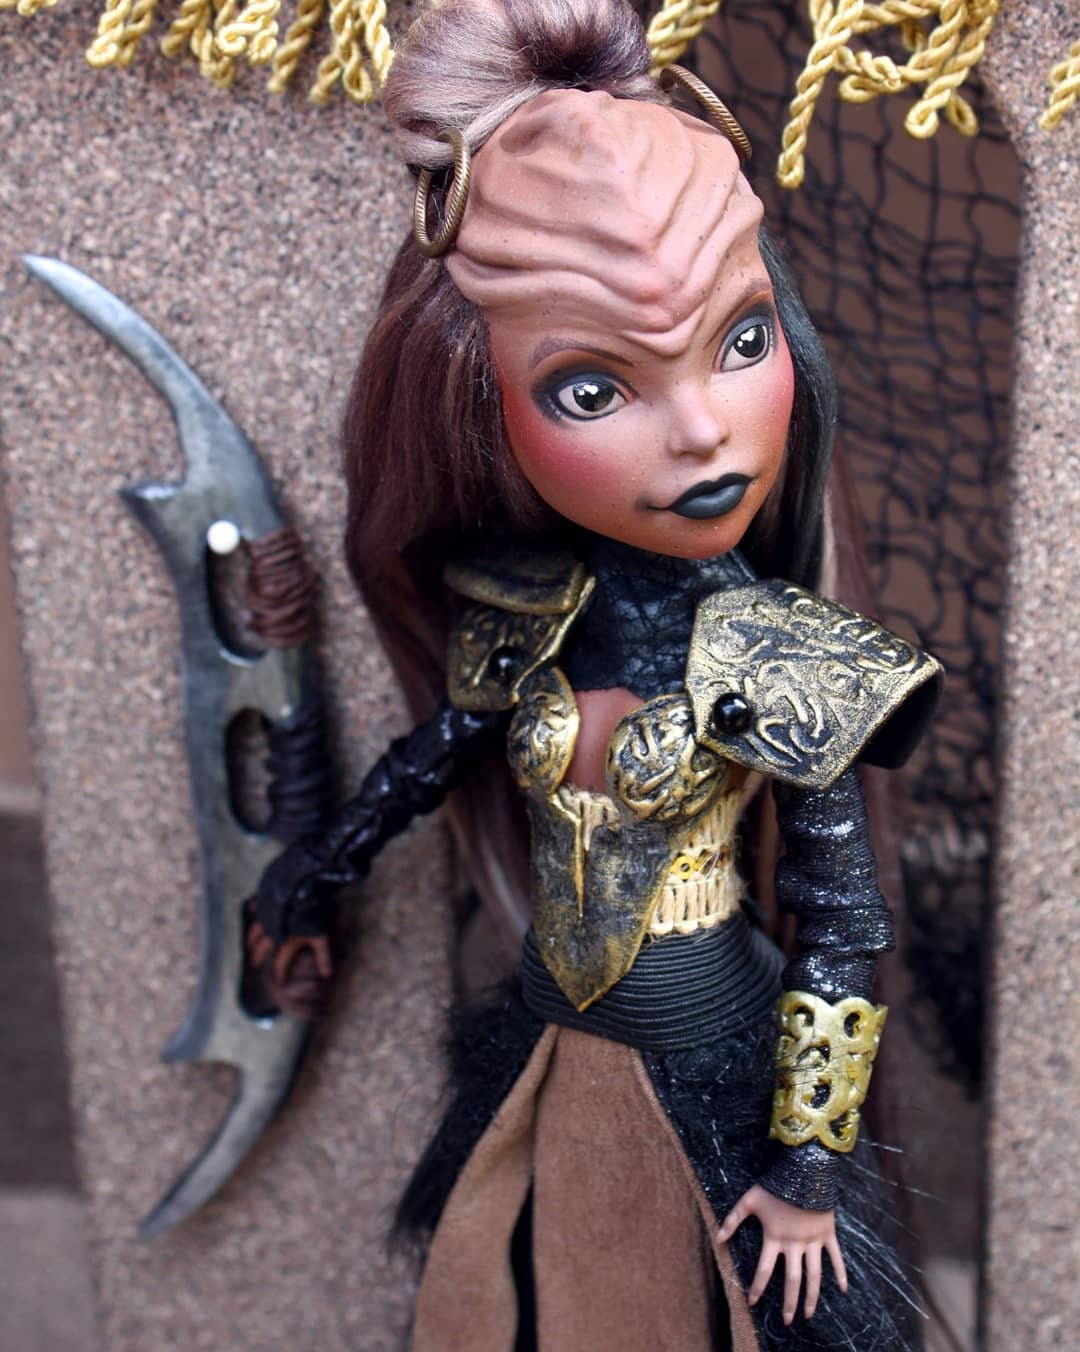 Klingon dolls